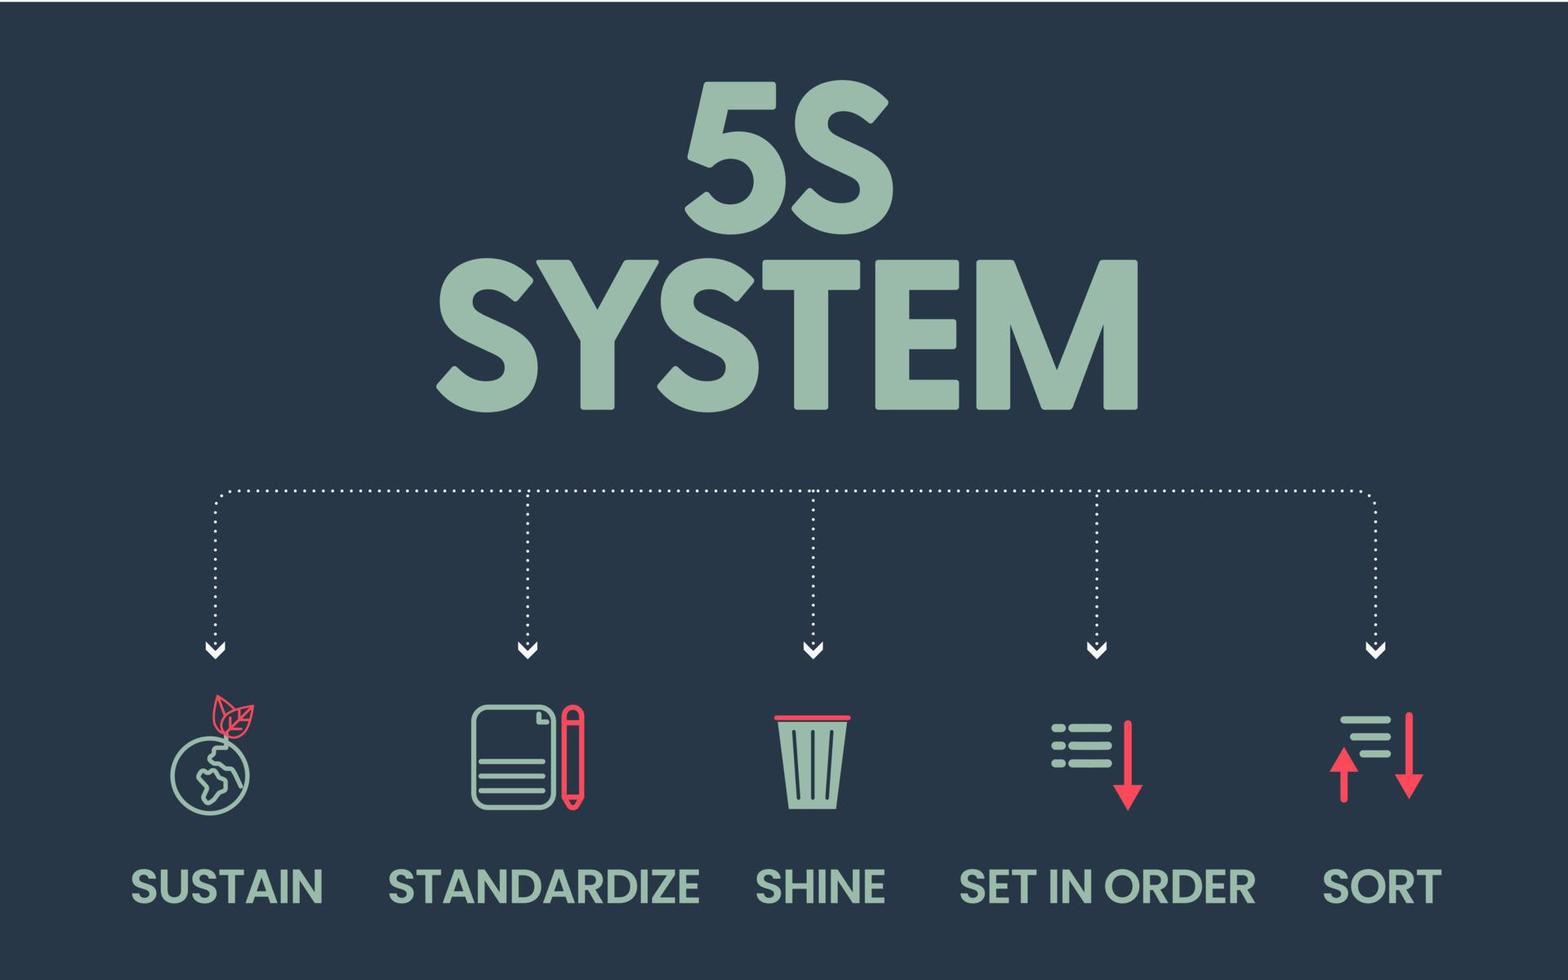 o sistema 5s está organizando espaços da indústria realizada de forma eficaz e segura em cinco etapas. classificar, colocar em ordem, brilhar, padronizar e sustentar com o processo lean em um vetor de banner para a empresa